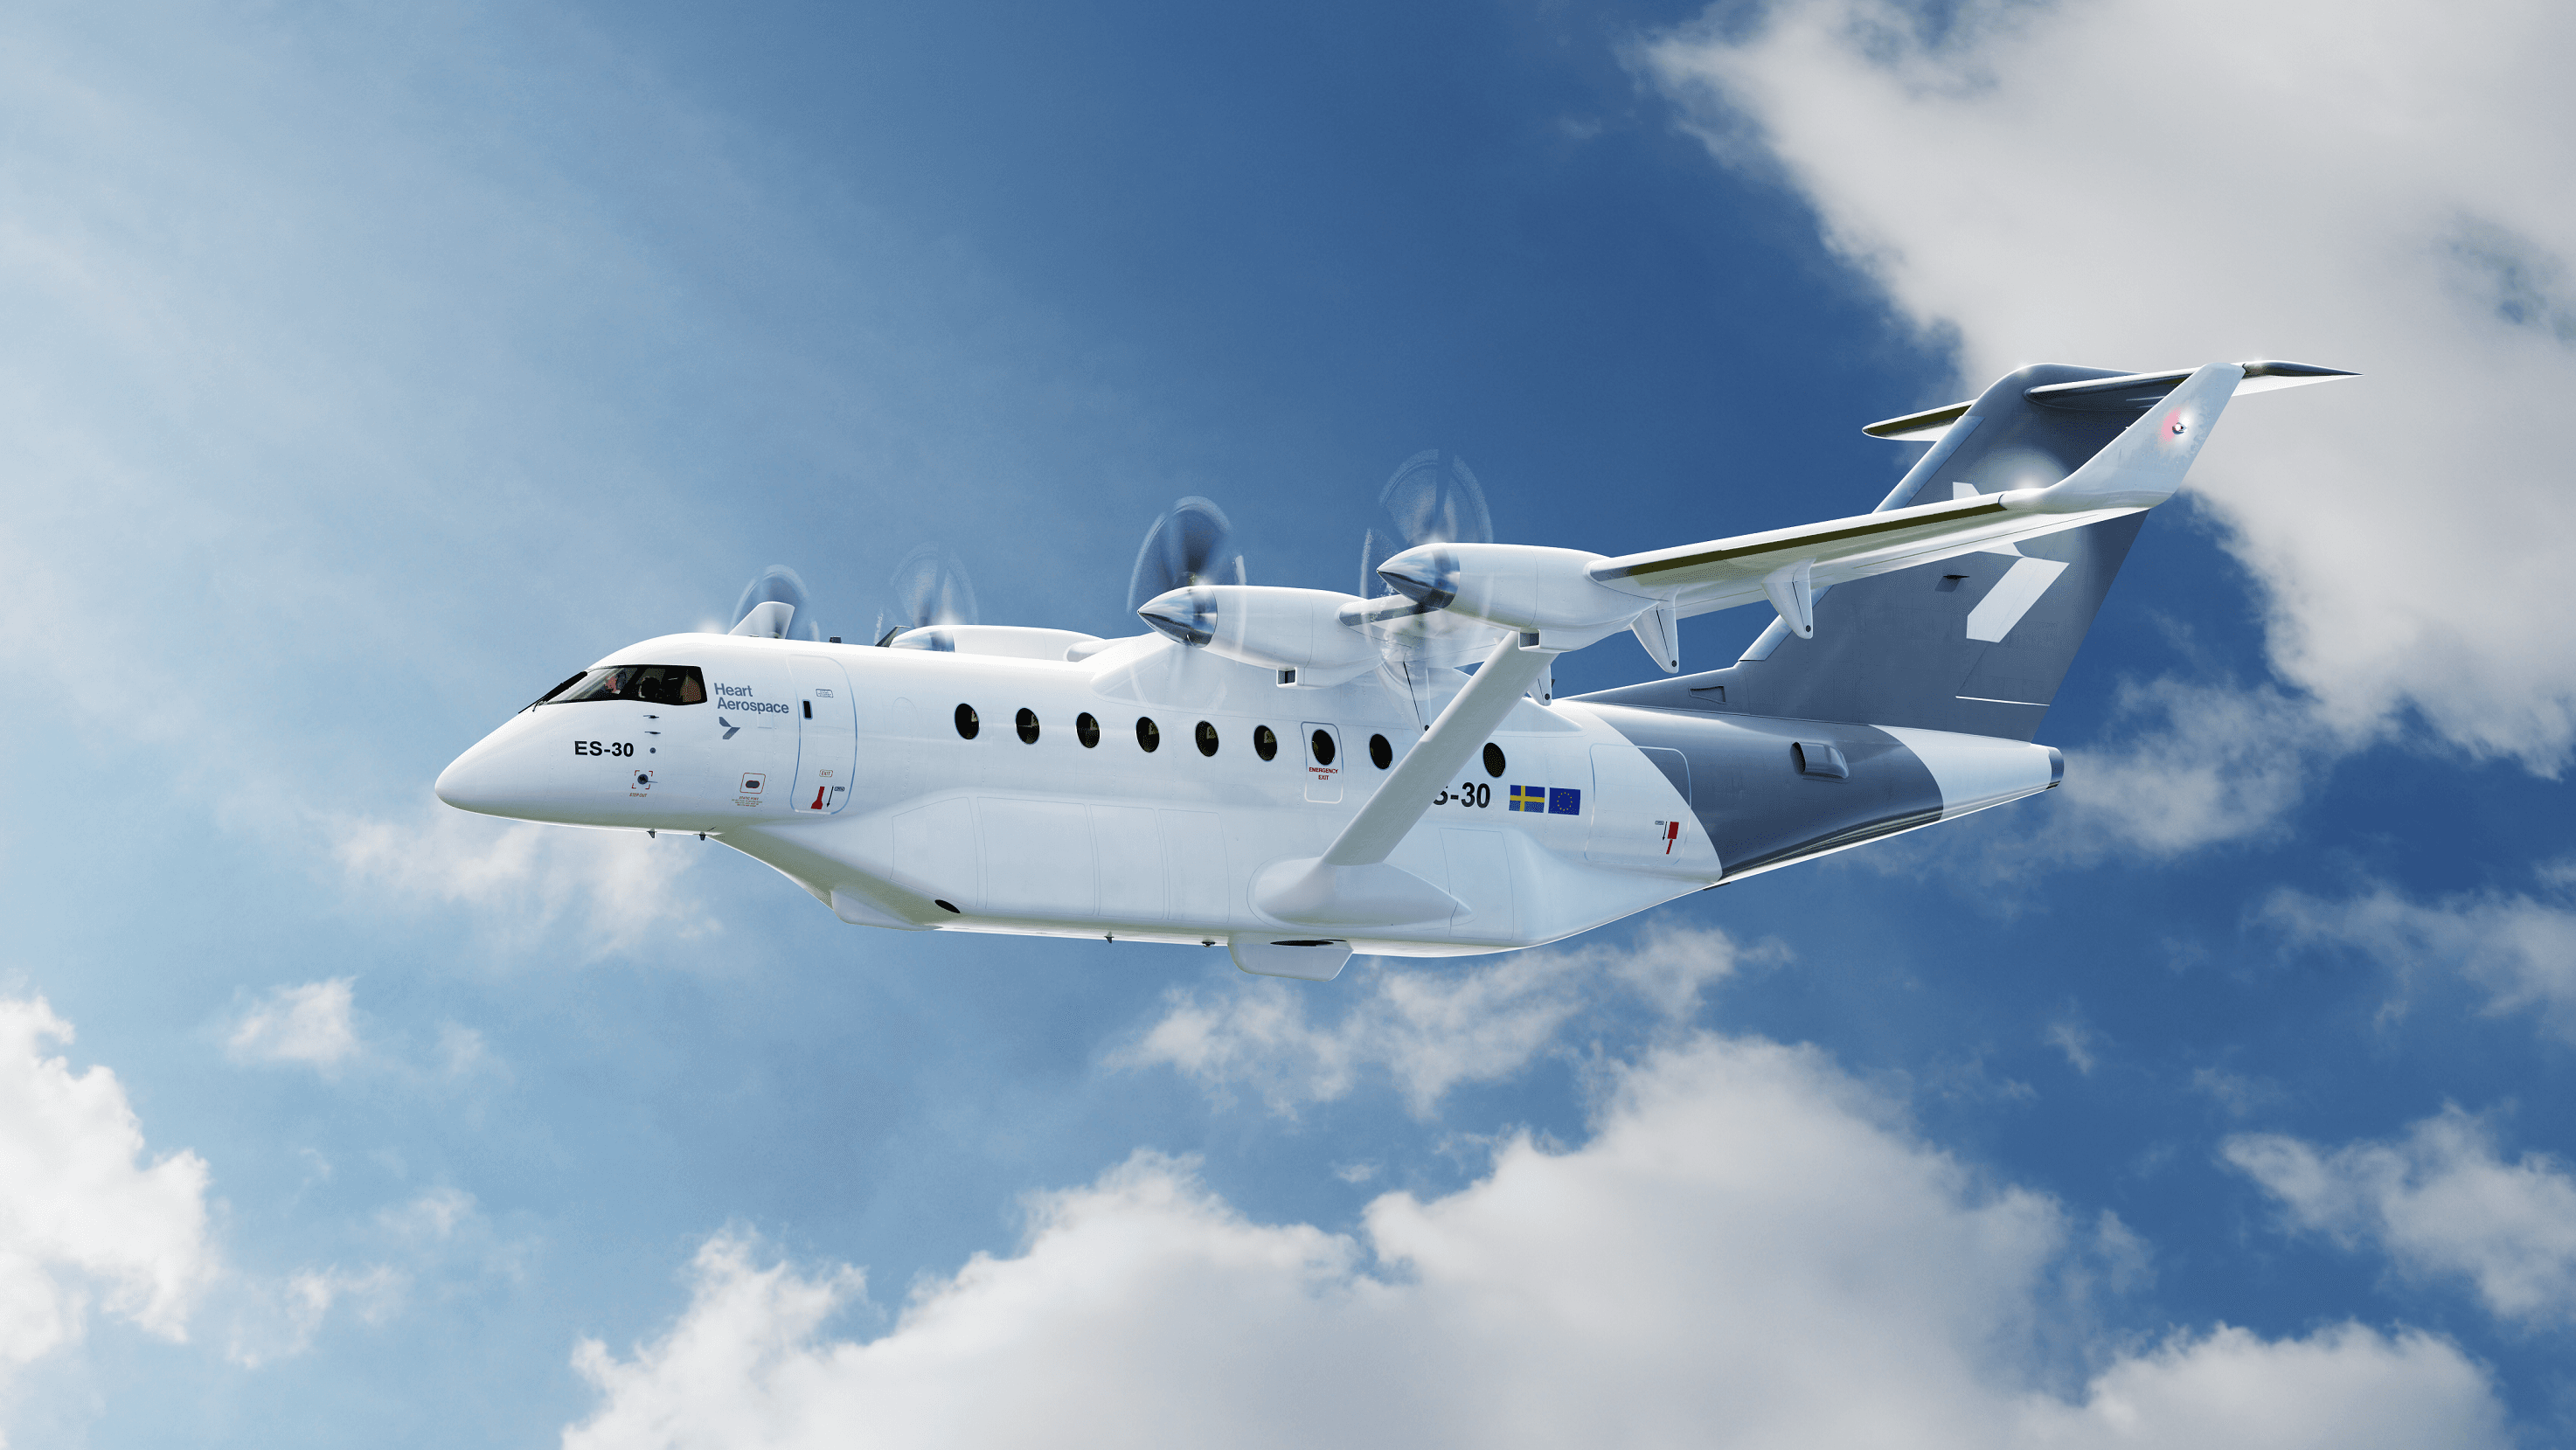 Heart Aerospace hoppas kunna bygga världens första kommersiella industri för elektrifierade flygplan, kanske i Halmstad. Foto: Heart Aerospace